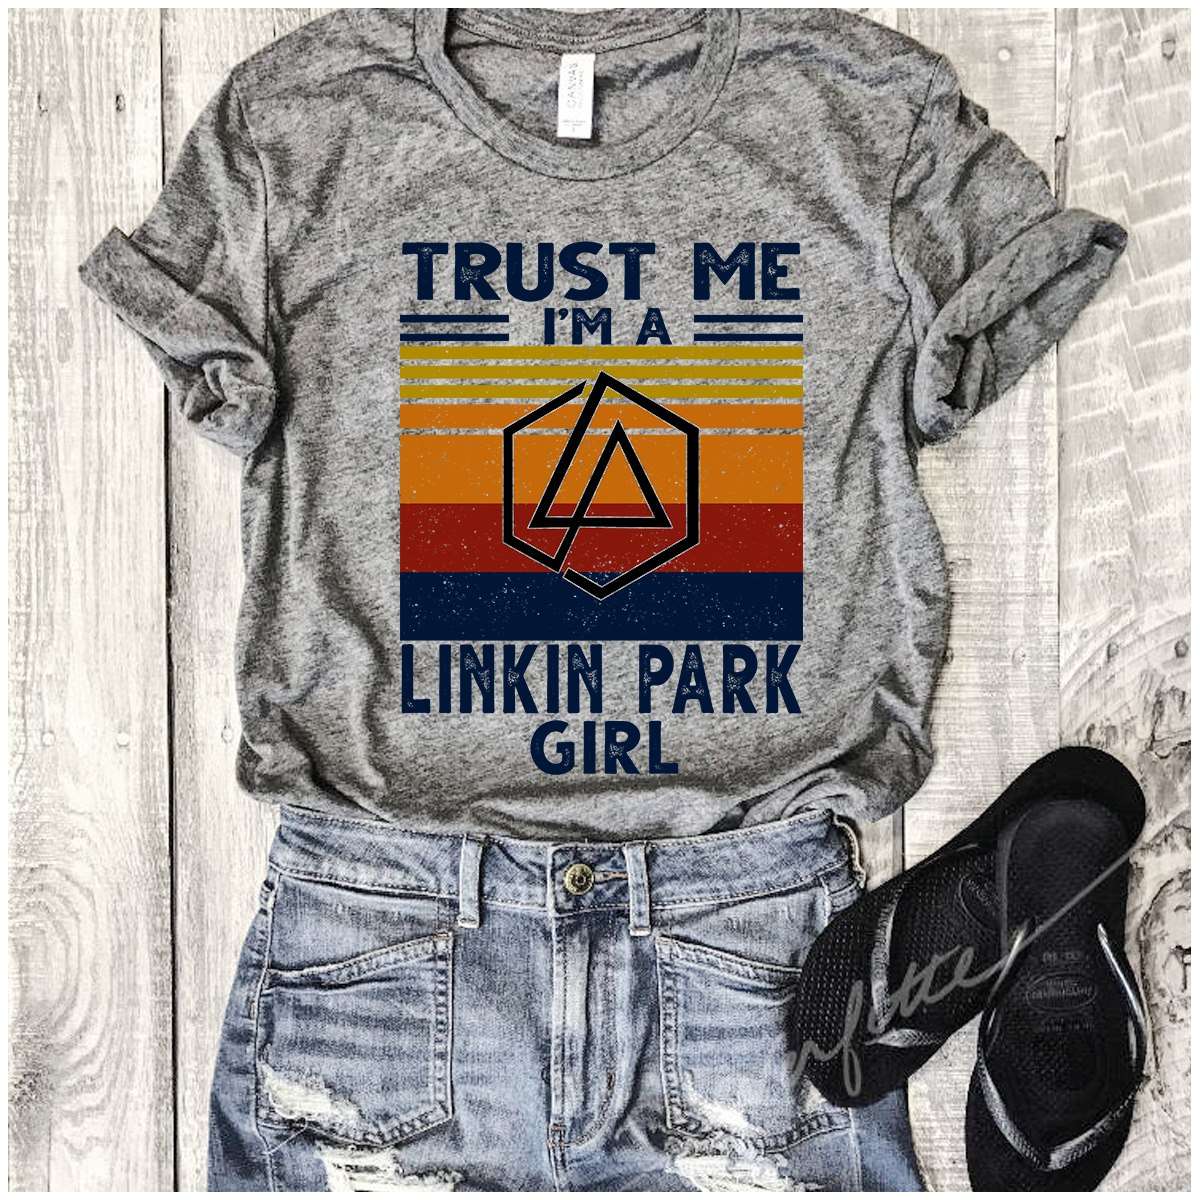 Trust me i'm a linkin park girl